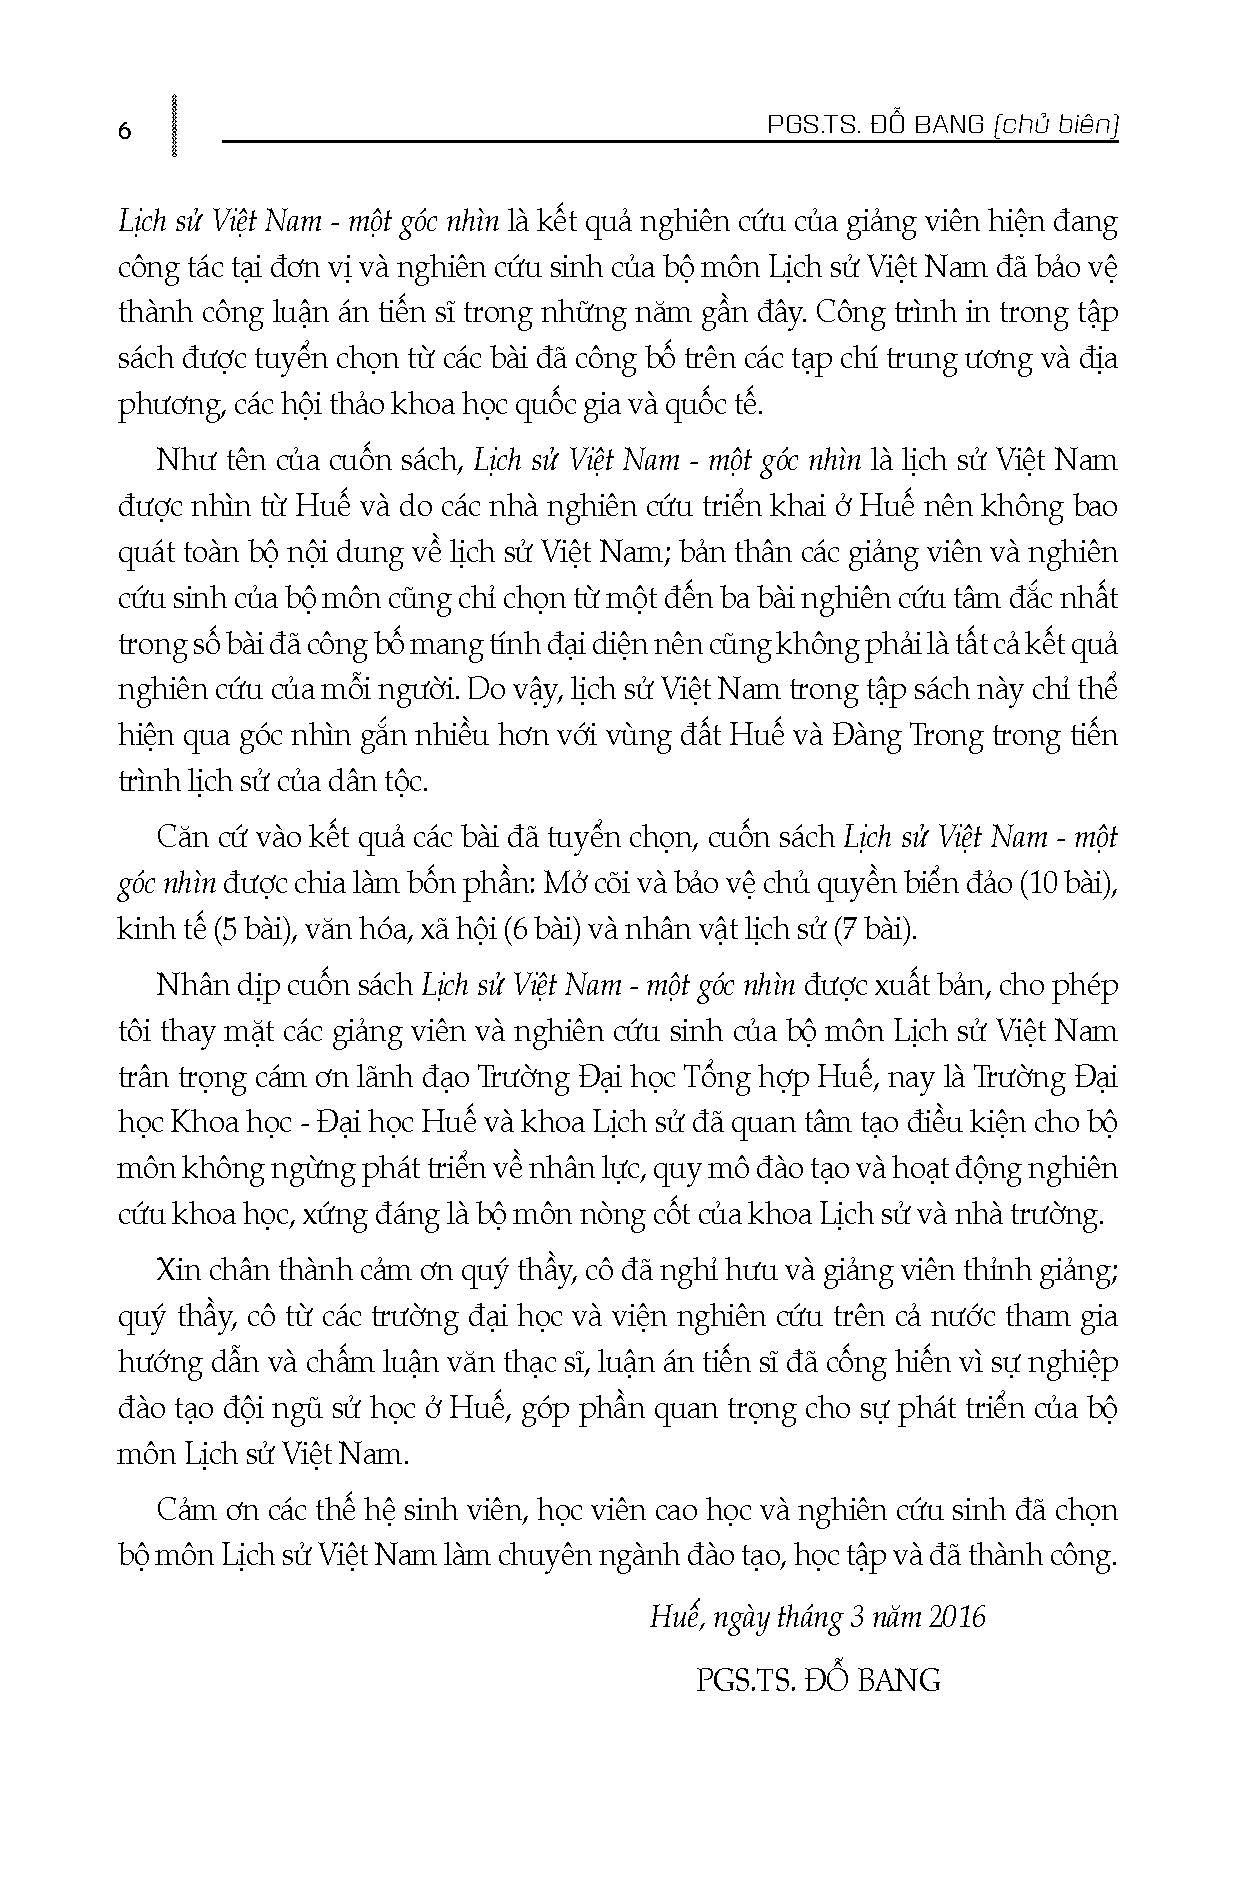 Lịch Sử Việt Nam Một Góc Nhìn - PGS.TS. Đỗ Bang (Chủ biên) - (bìa mềm)